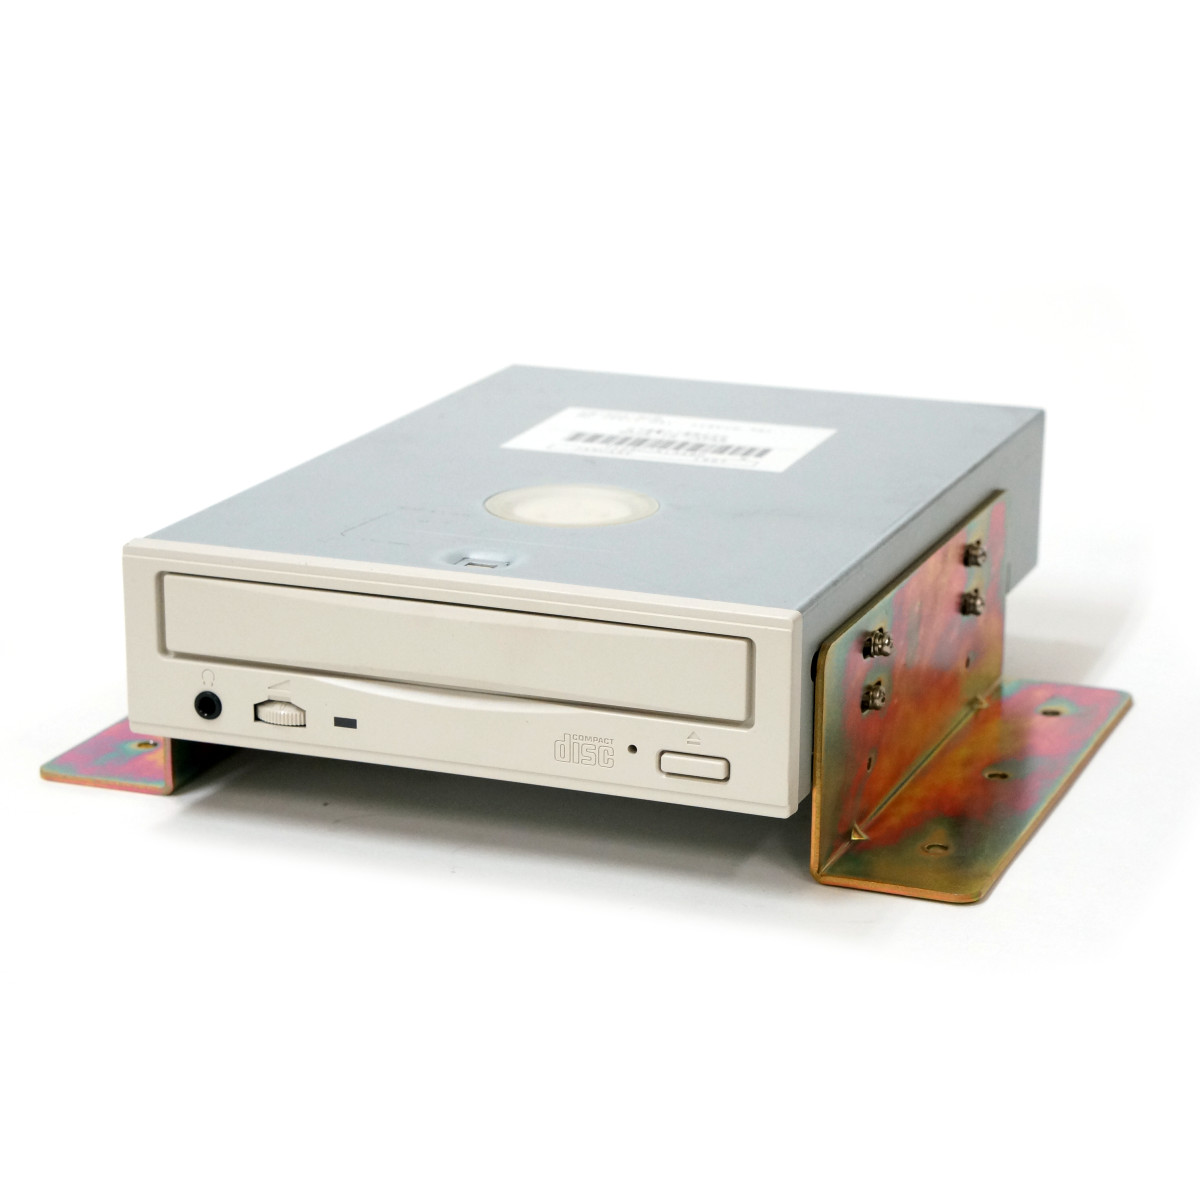 【中古】 カプコン CPS-3 CDドライブ用 取付け金具 ネジ付 【U-CPS3-CDD-BRKT】